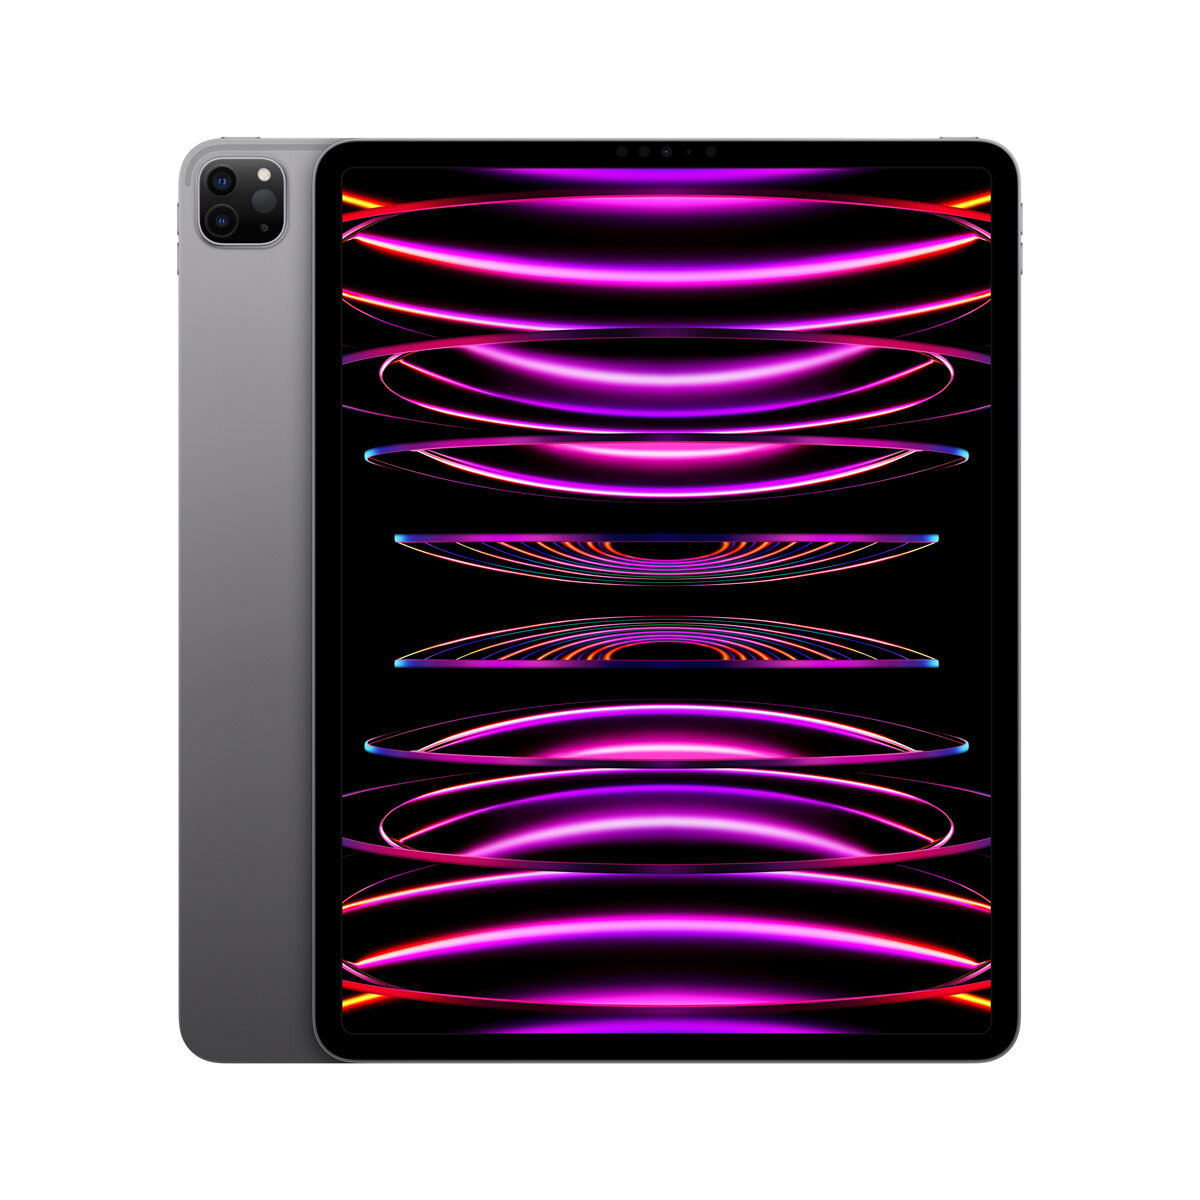 Buy Apple iPad Pro 6th Gen, 12.9 Inch, WiFi 512GB in Space Grey, MNXU3B/A at costco.co.uk